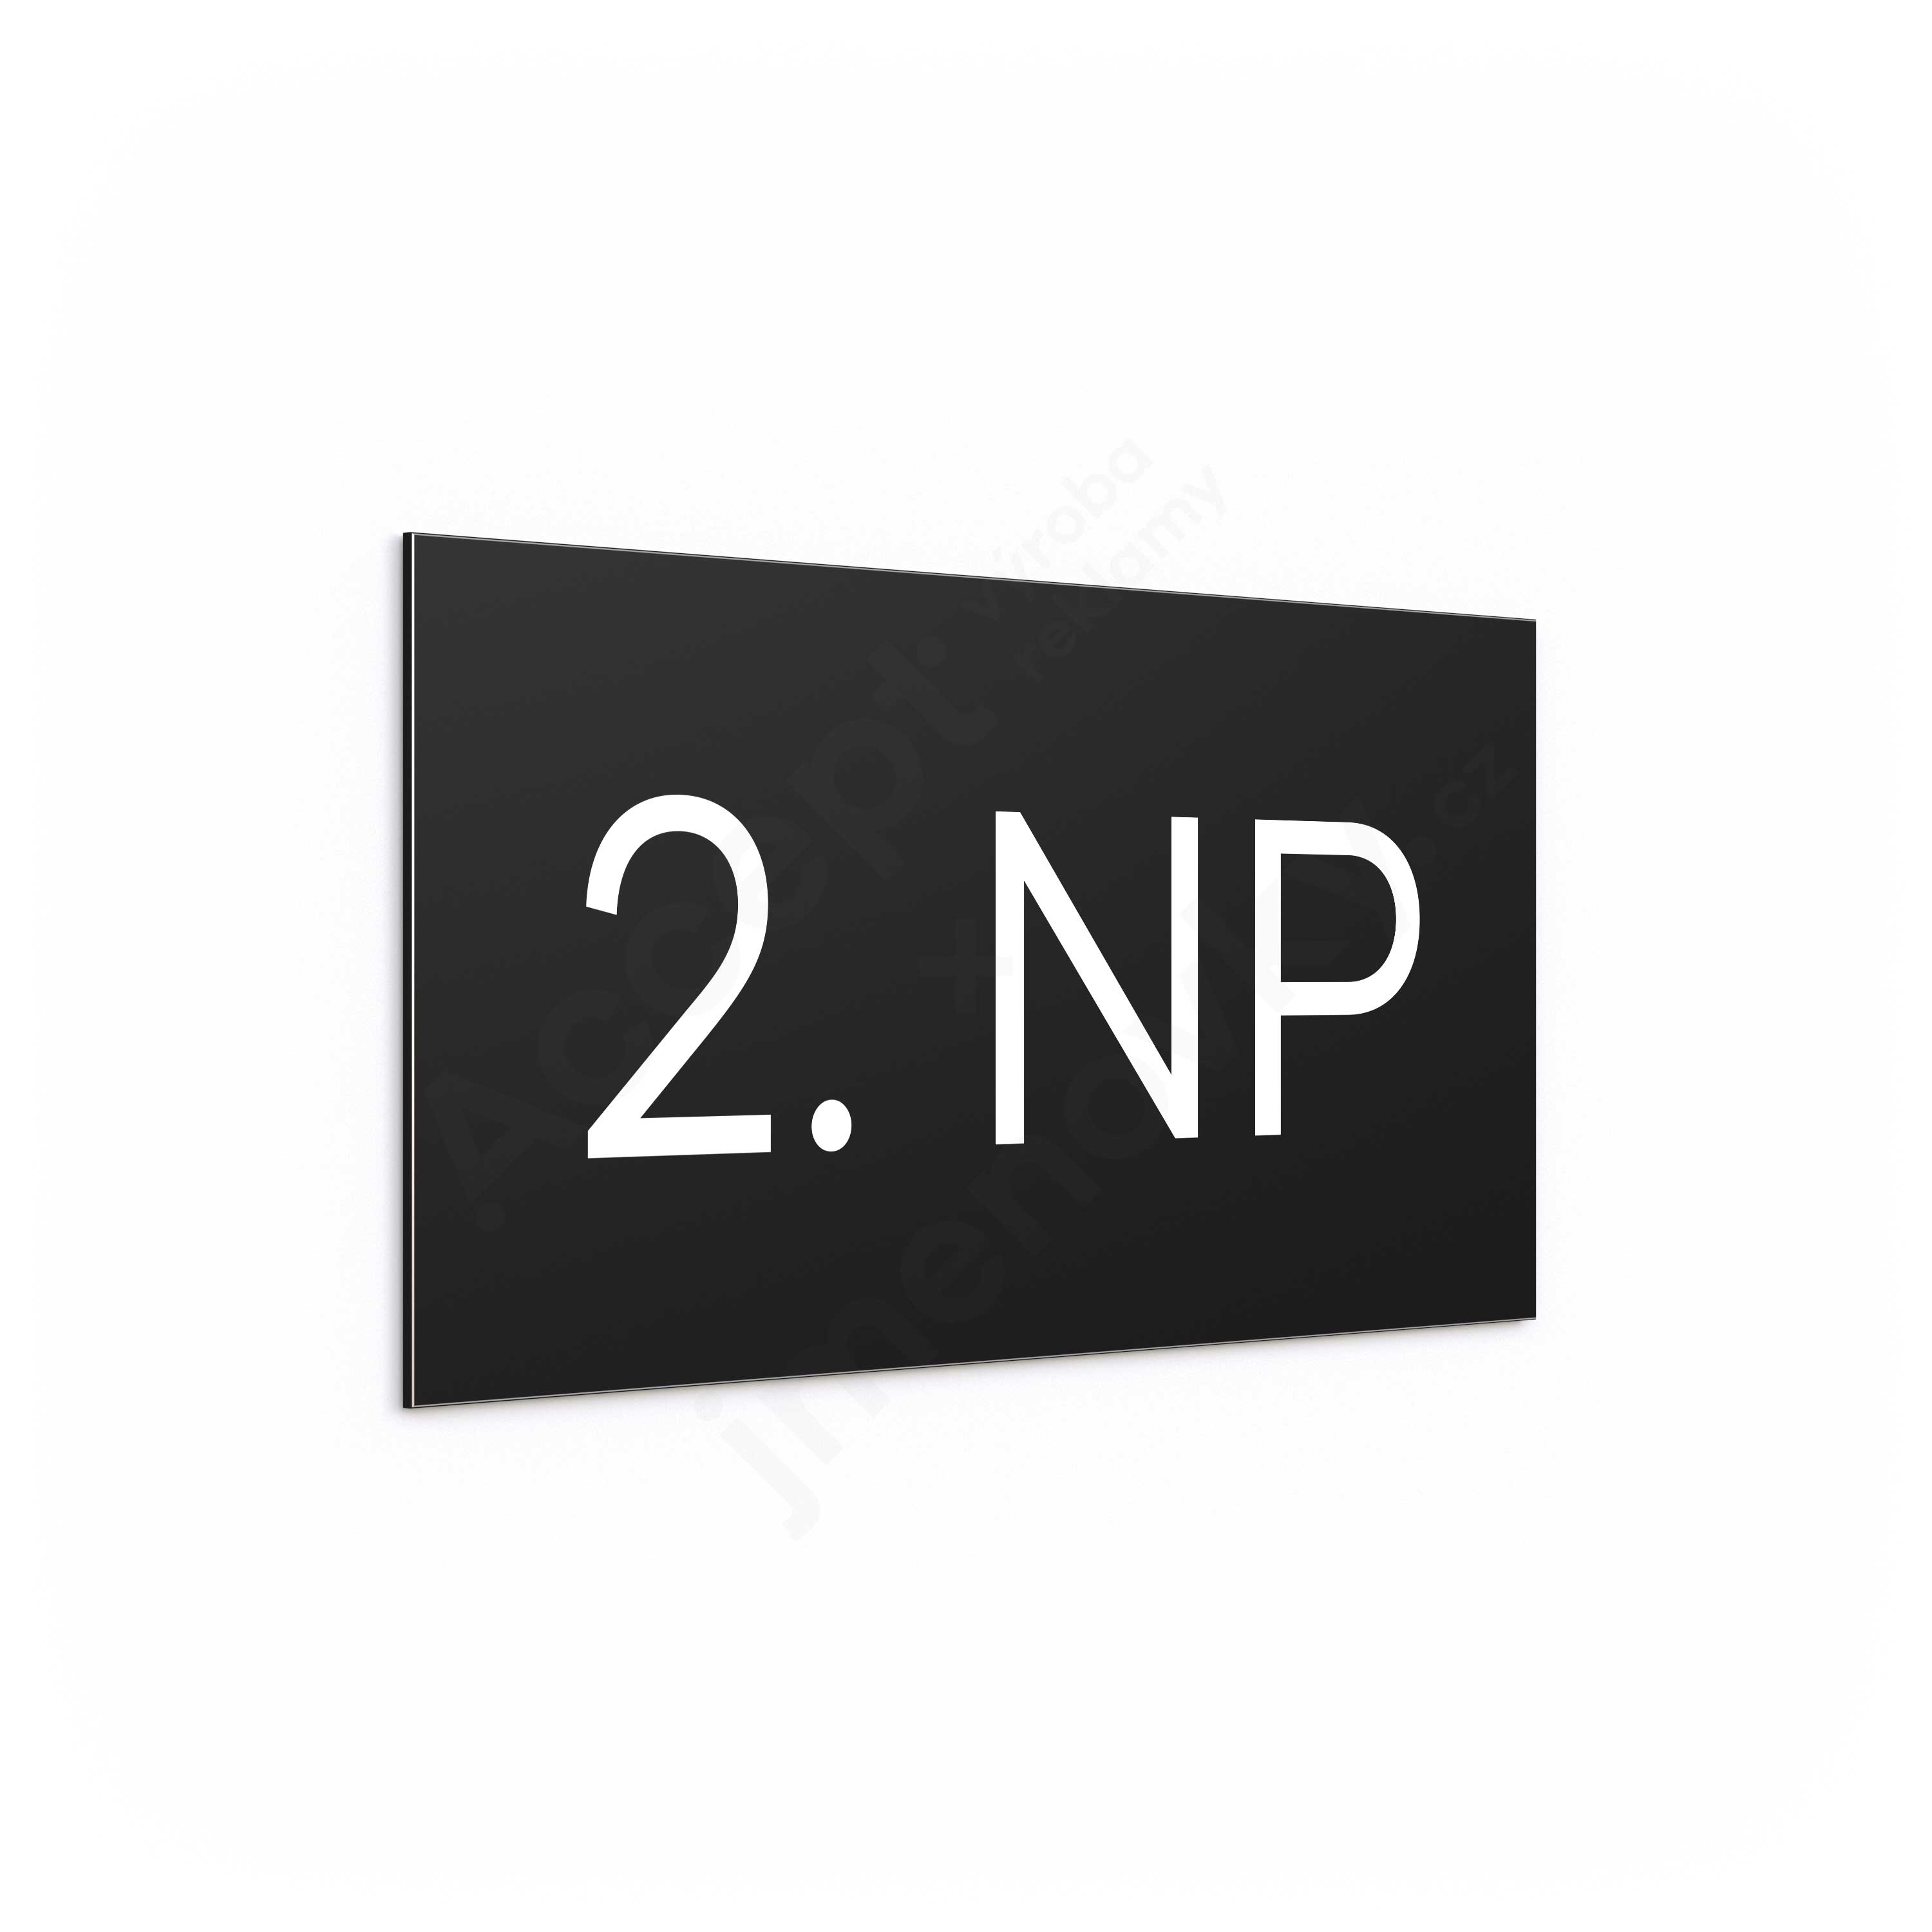 Označení podlaží "2. NP" - černá tabulka - bílý popis